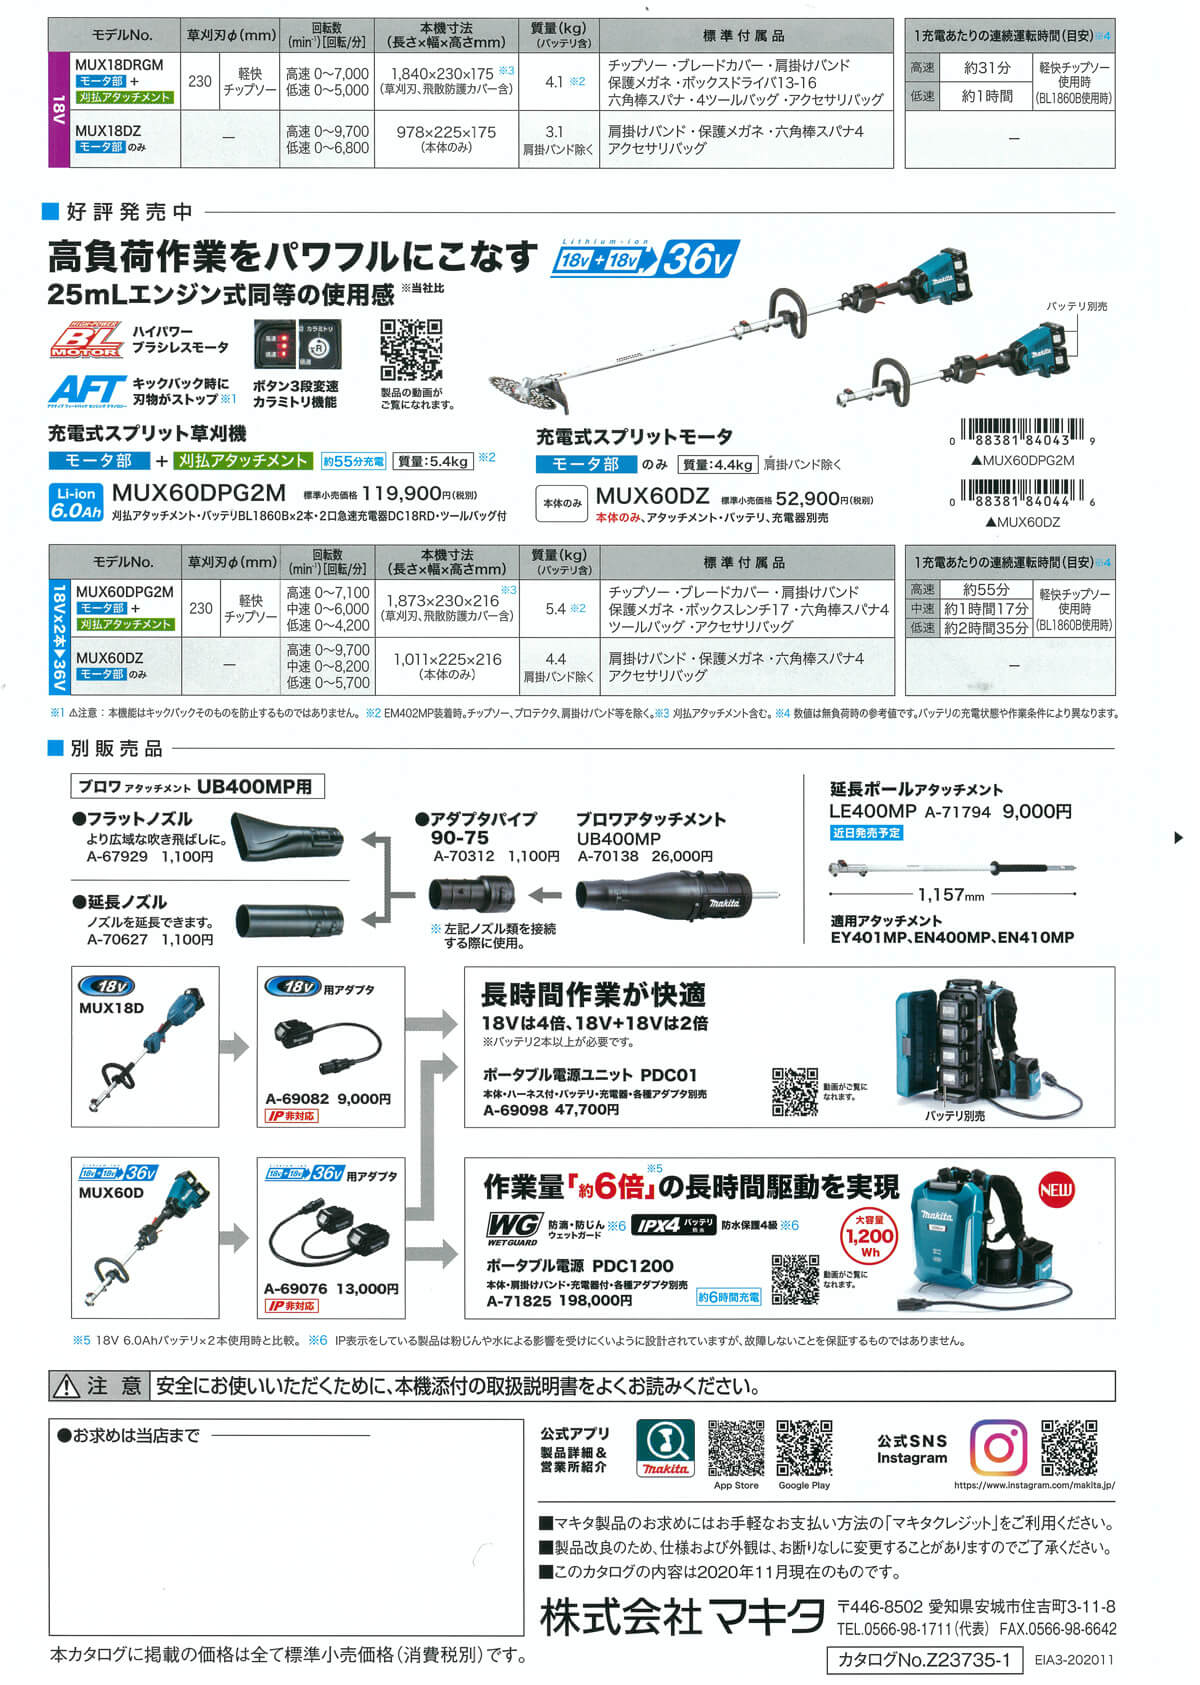 マキタ MUX01GRMM 充電式スプリット草刈り機 40Vmax 4.0Ah - 1